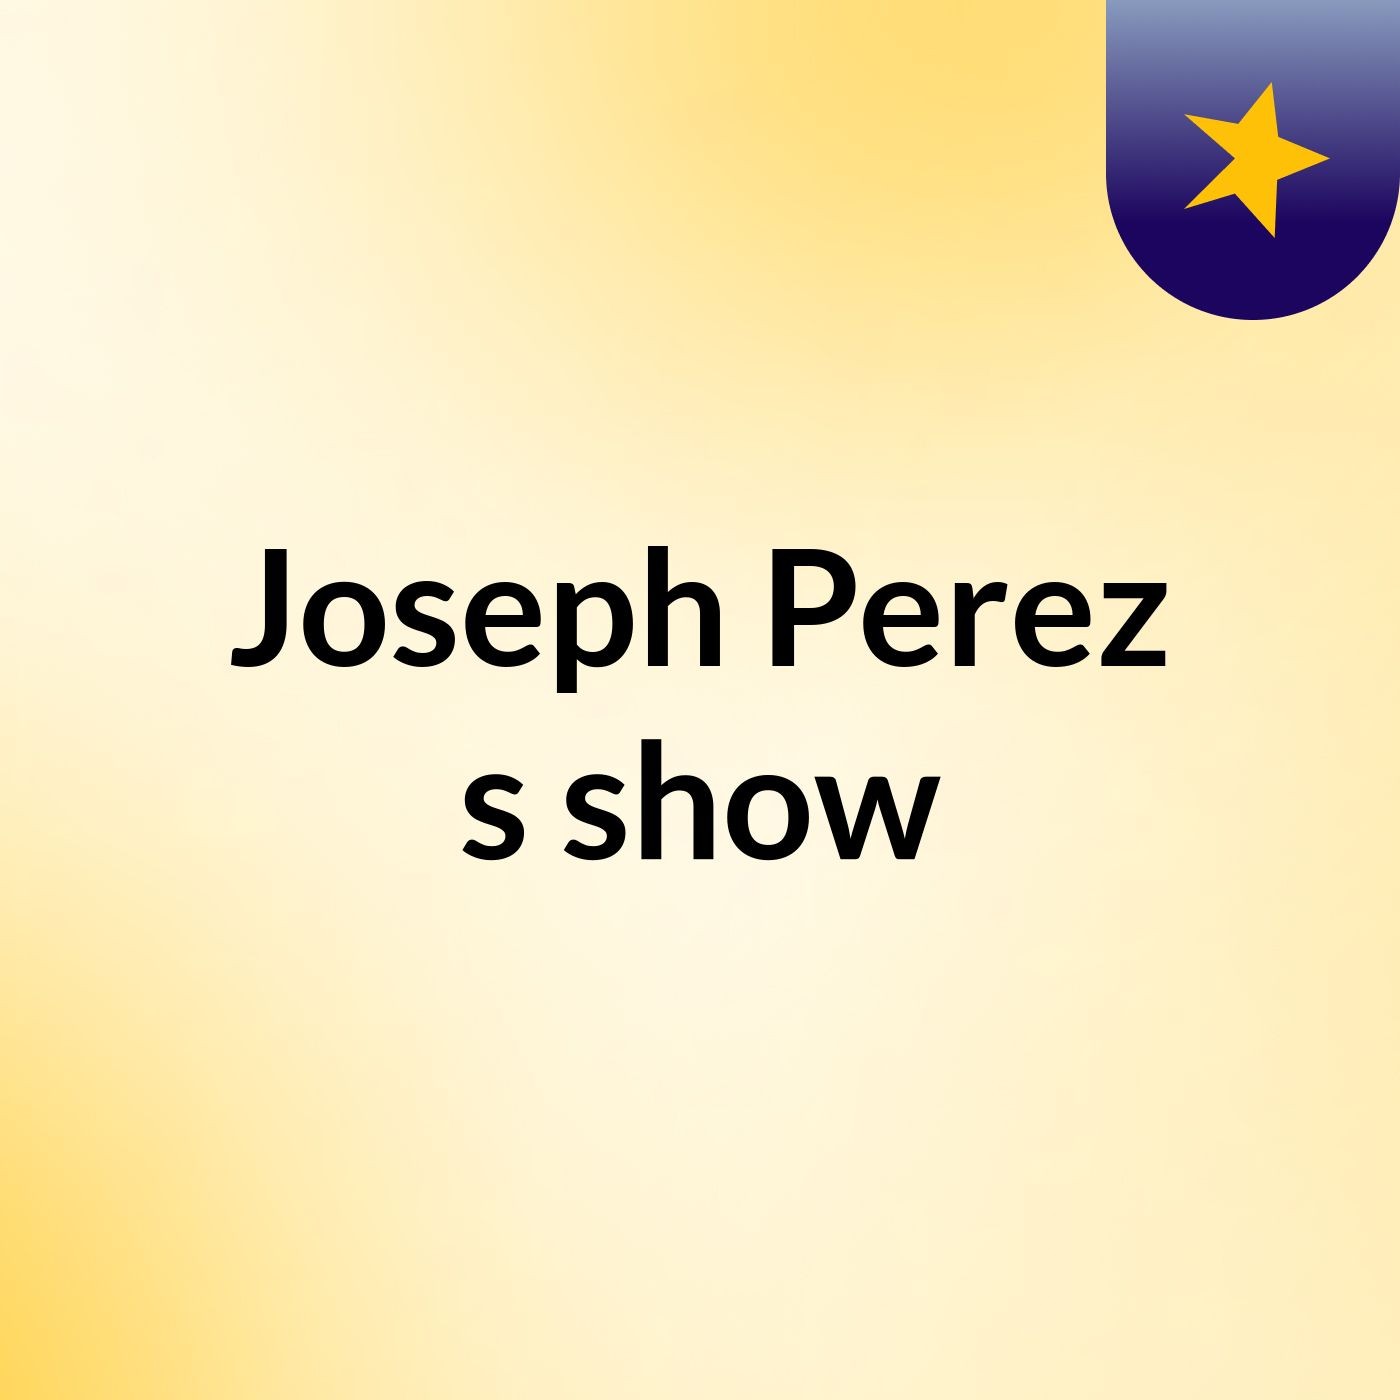 Joseph Perez's show